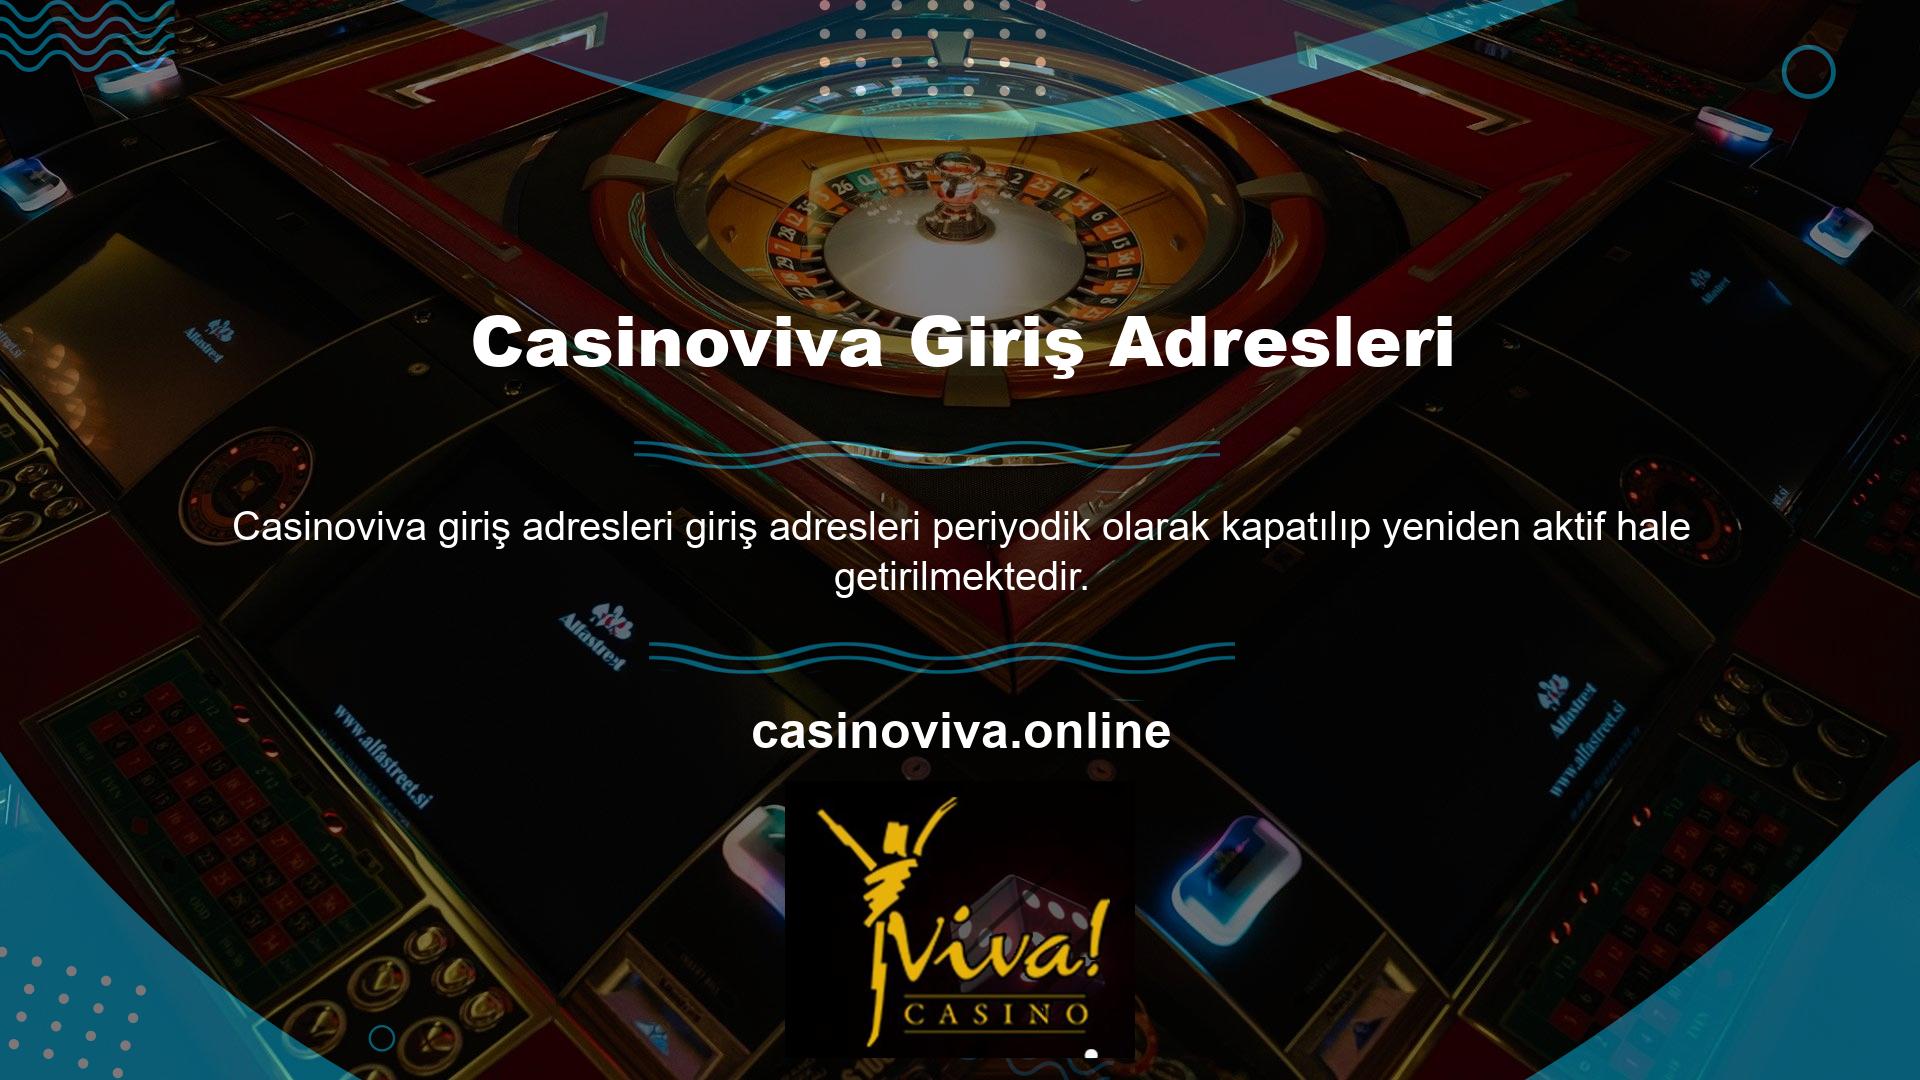 Sorunsuz bir oyun deneyimi için Casinoviva bahis ana sayfasında mevcut adresinizde işlem yapmanız gerekmektedir